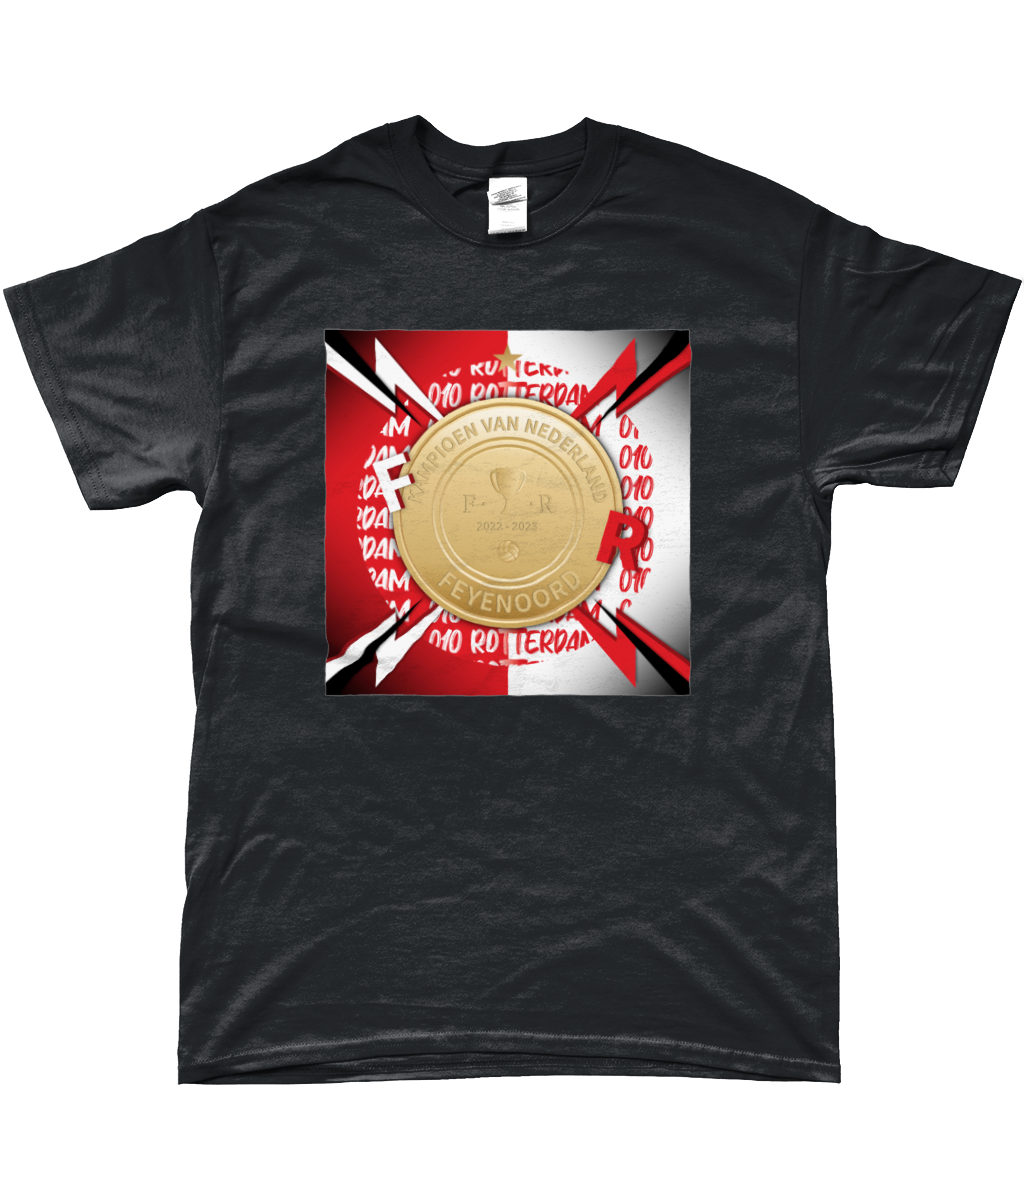 Feyenoord - Landskampioen 1 T-Shirt